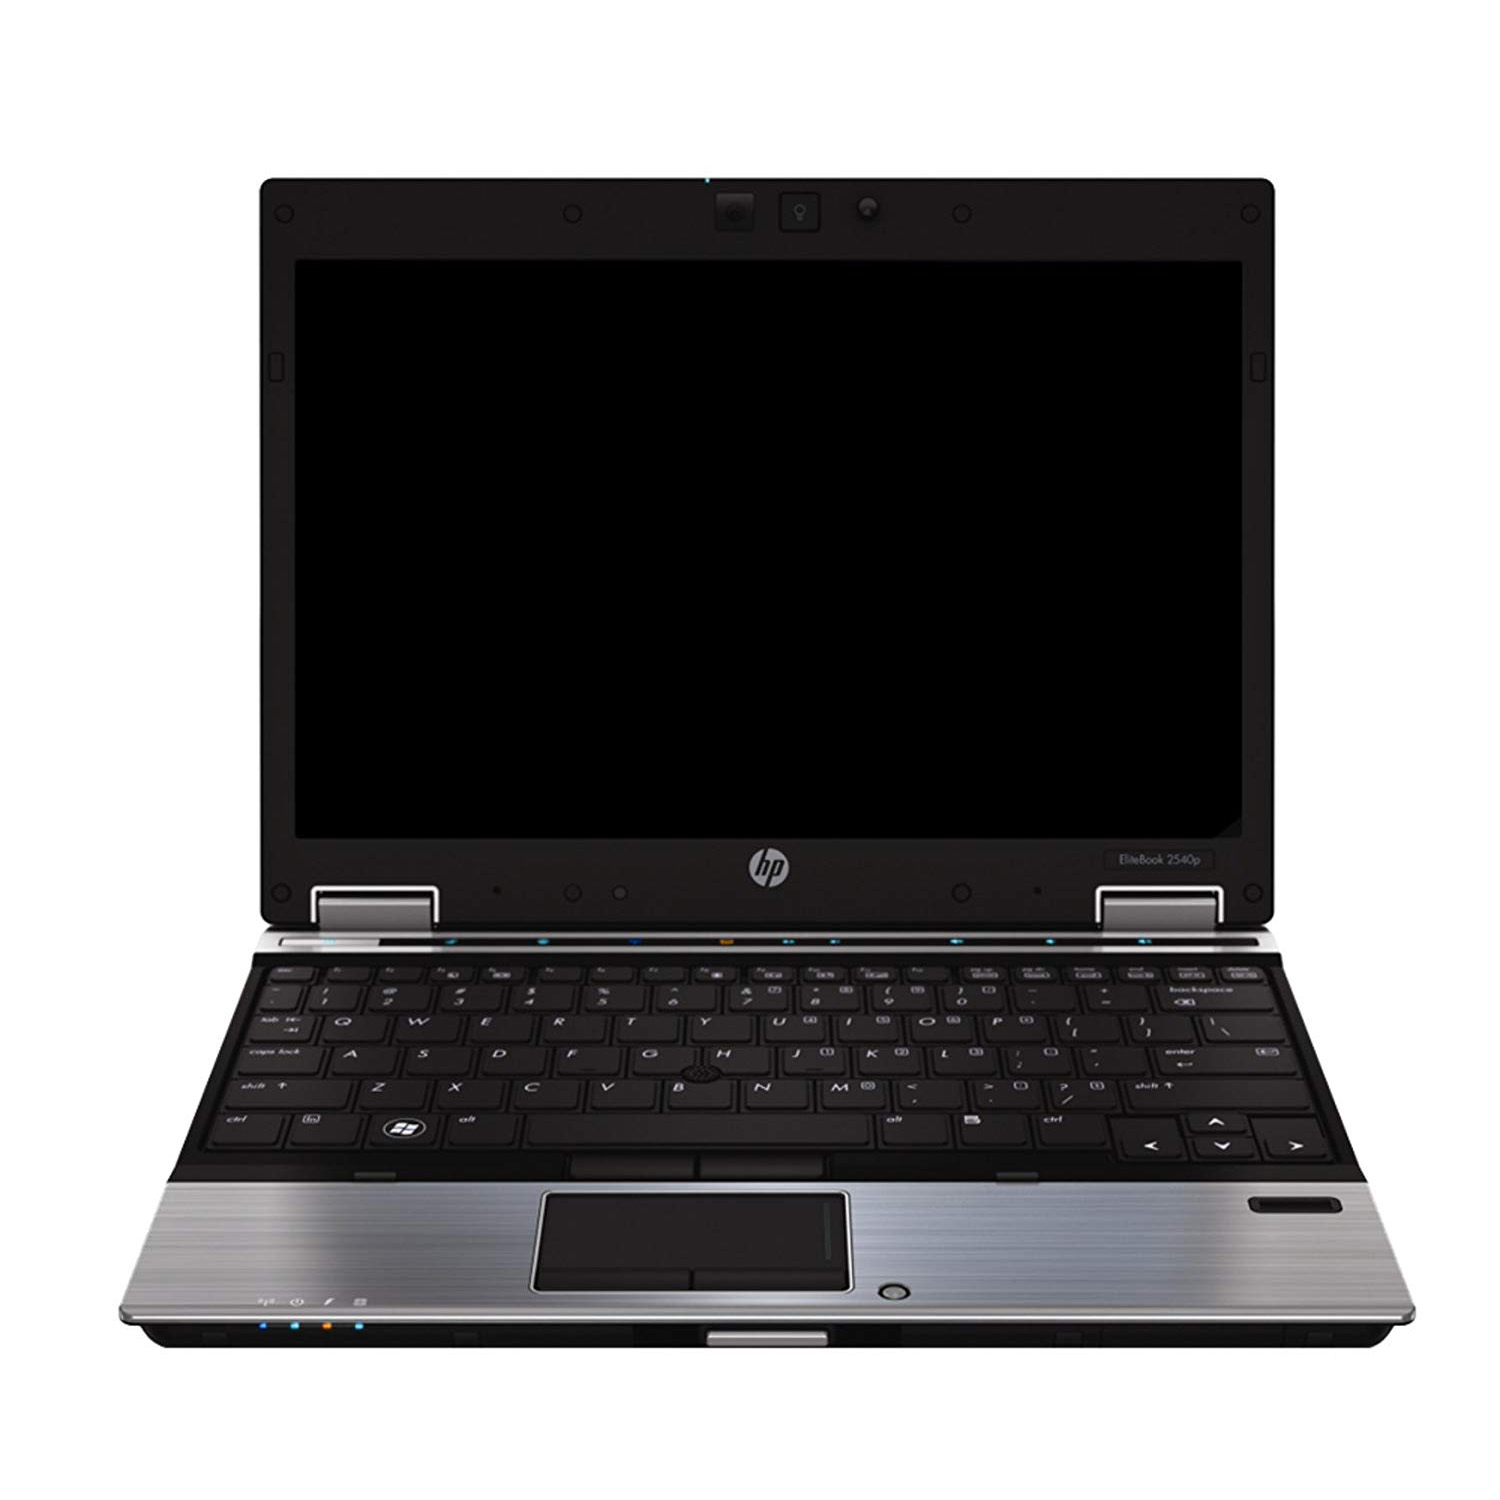 HP EliteBook 2540p Клас A-| Лаптопи втора ръка | iZone